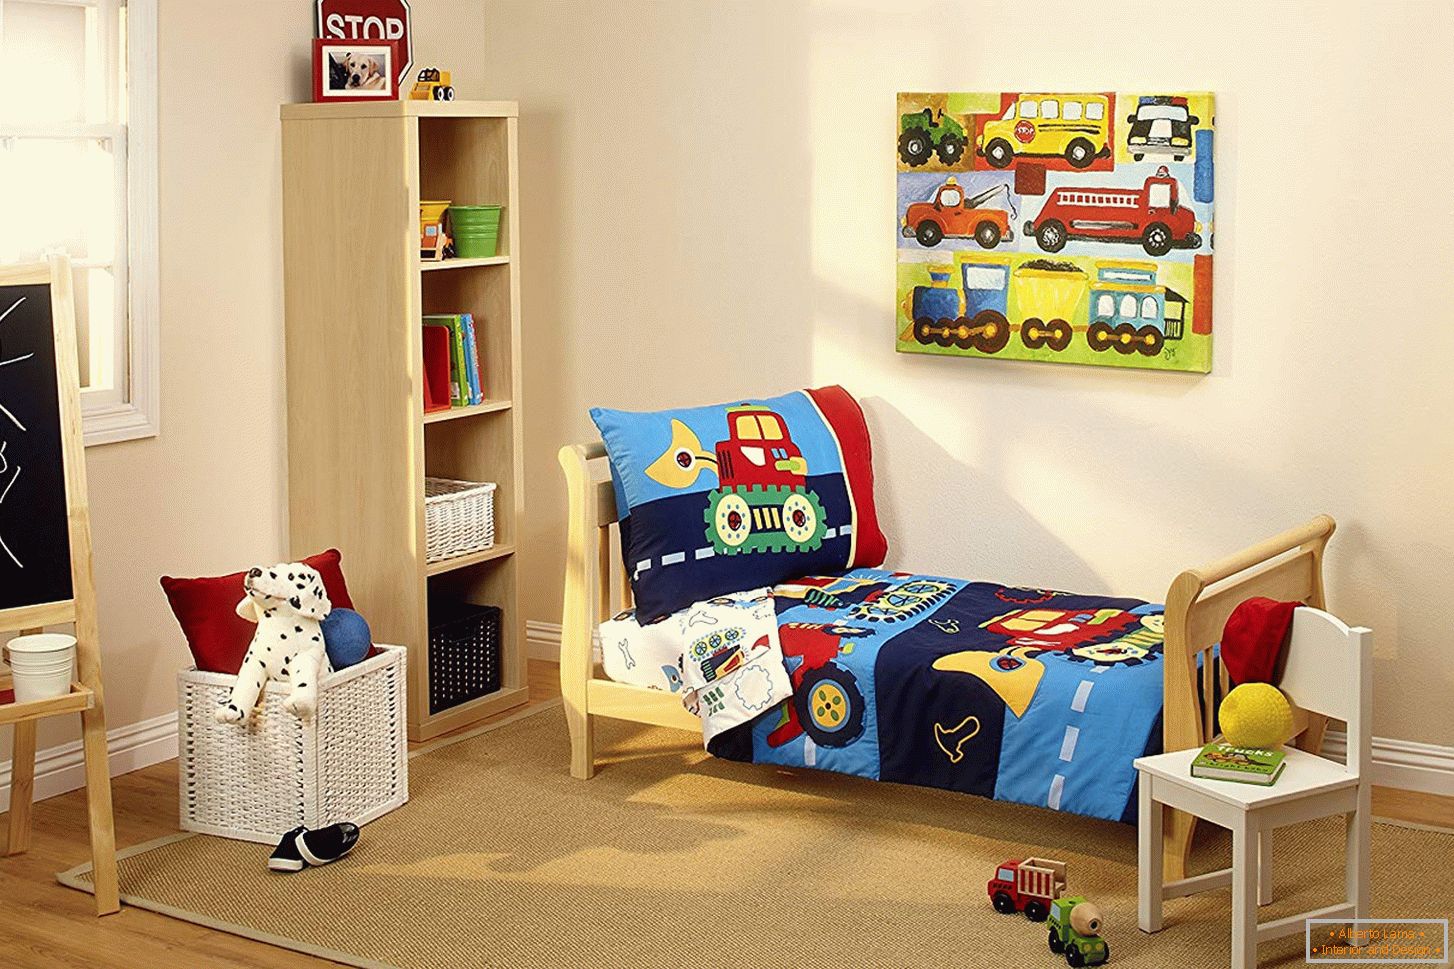 Design of children's bedroom